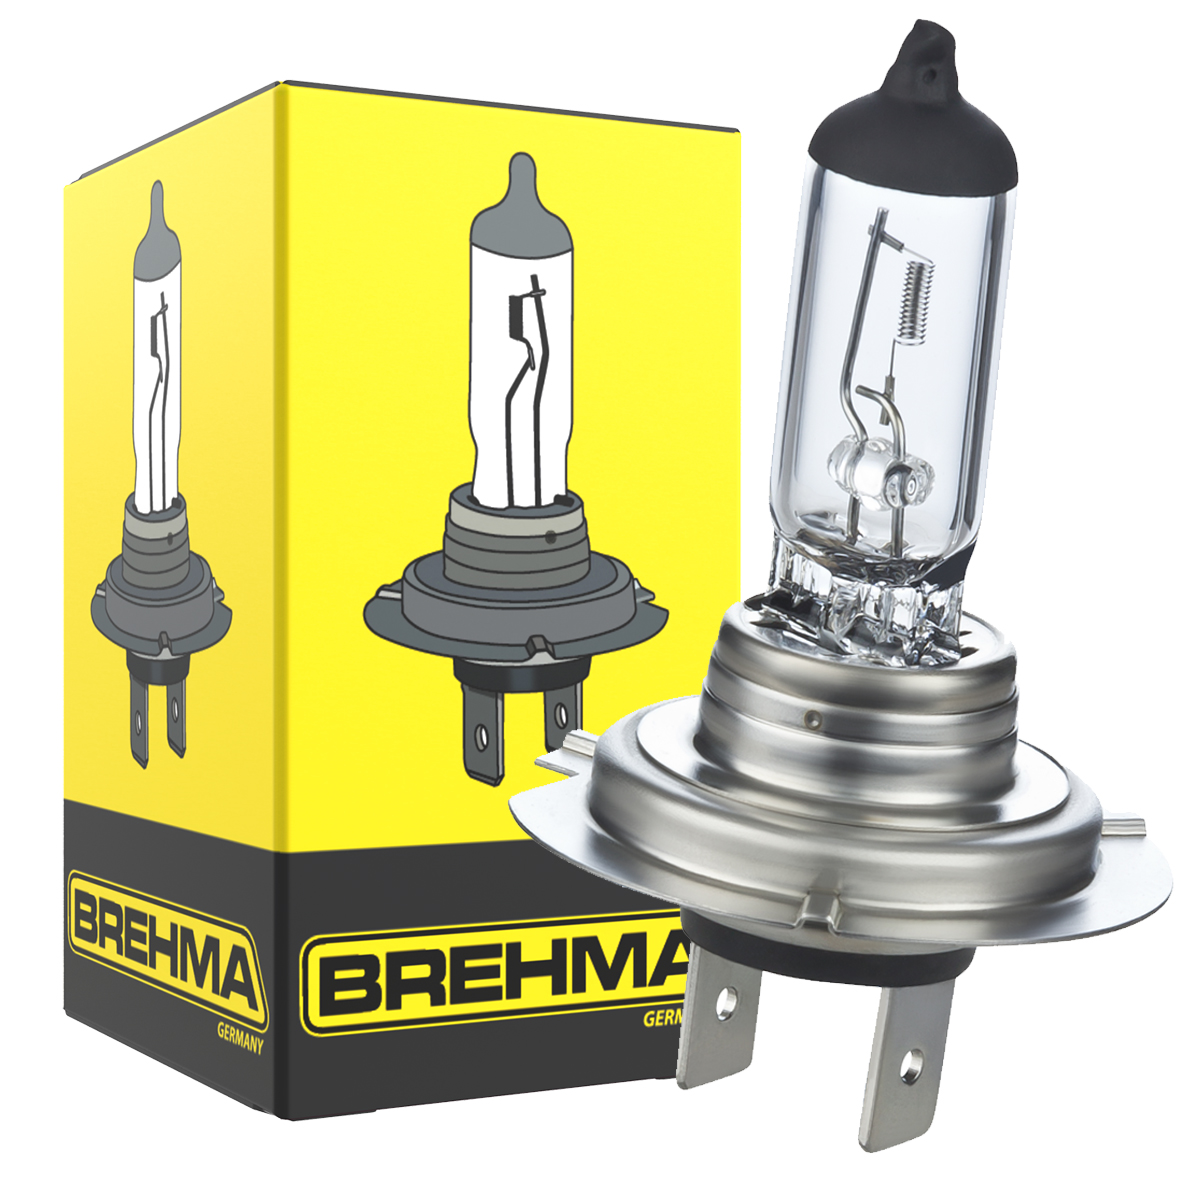 Auto-Lampen-Discount - H7 Lampen und mehr günstig kaufen - BREHMA Classic H7  12V 55W Halogen Autolampe Standard